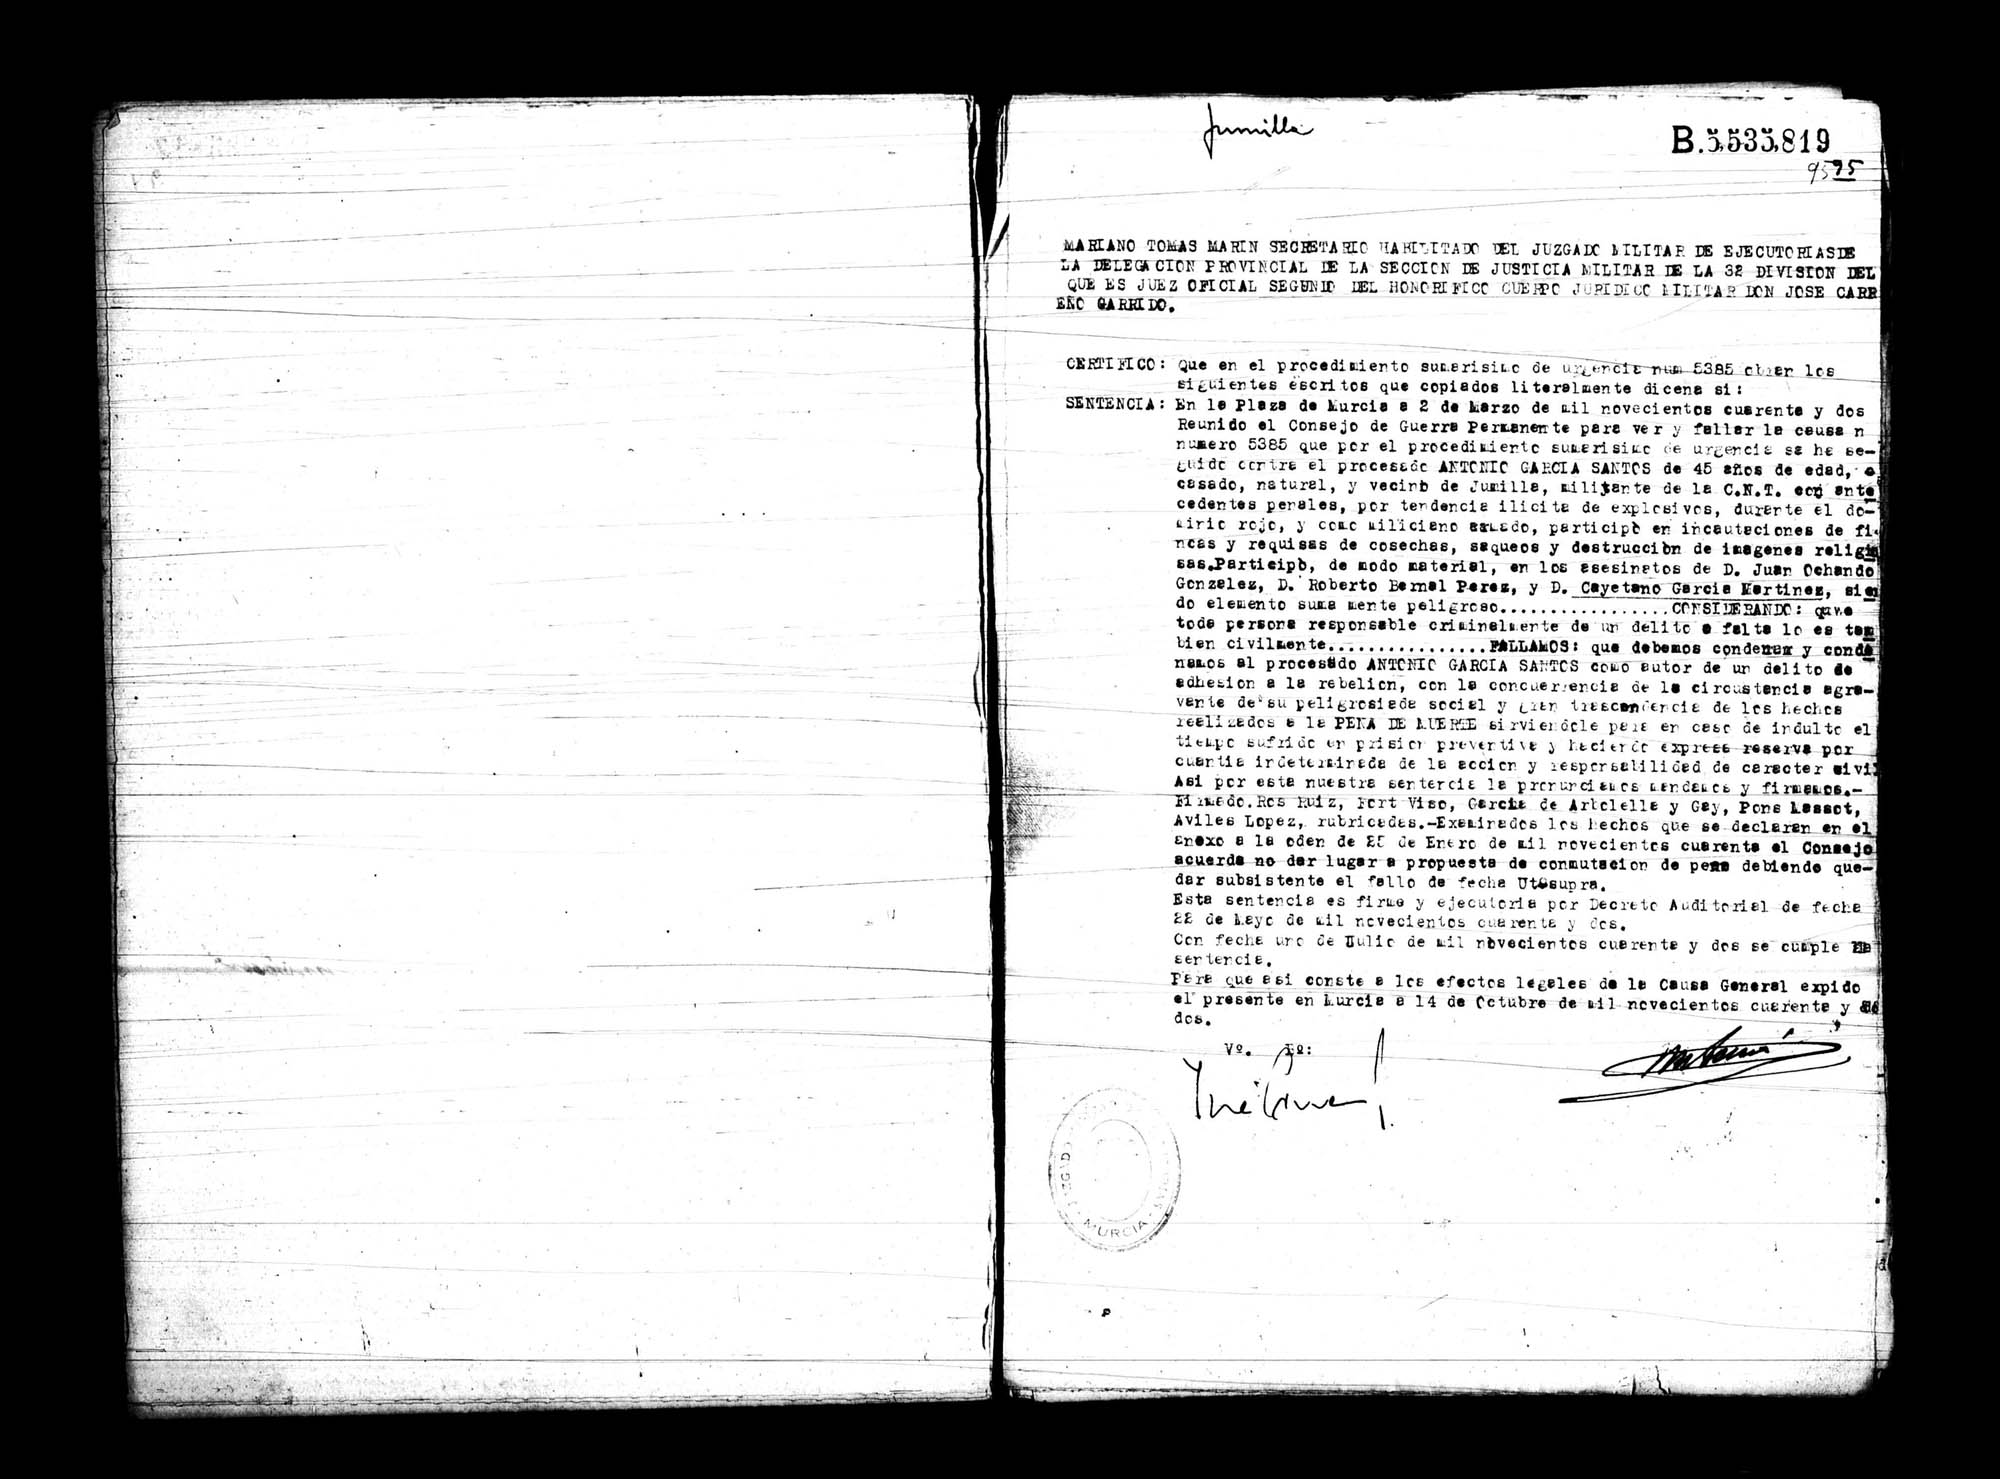 Certificado de la sentencia pronunciada contra Antonio García Santos, causa 5385, el 2 de marzo de 1942.